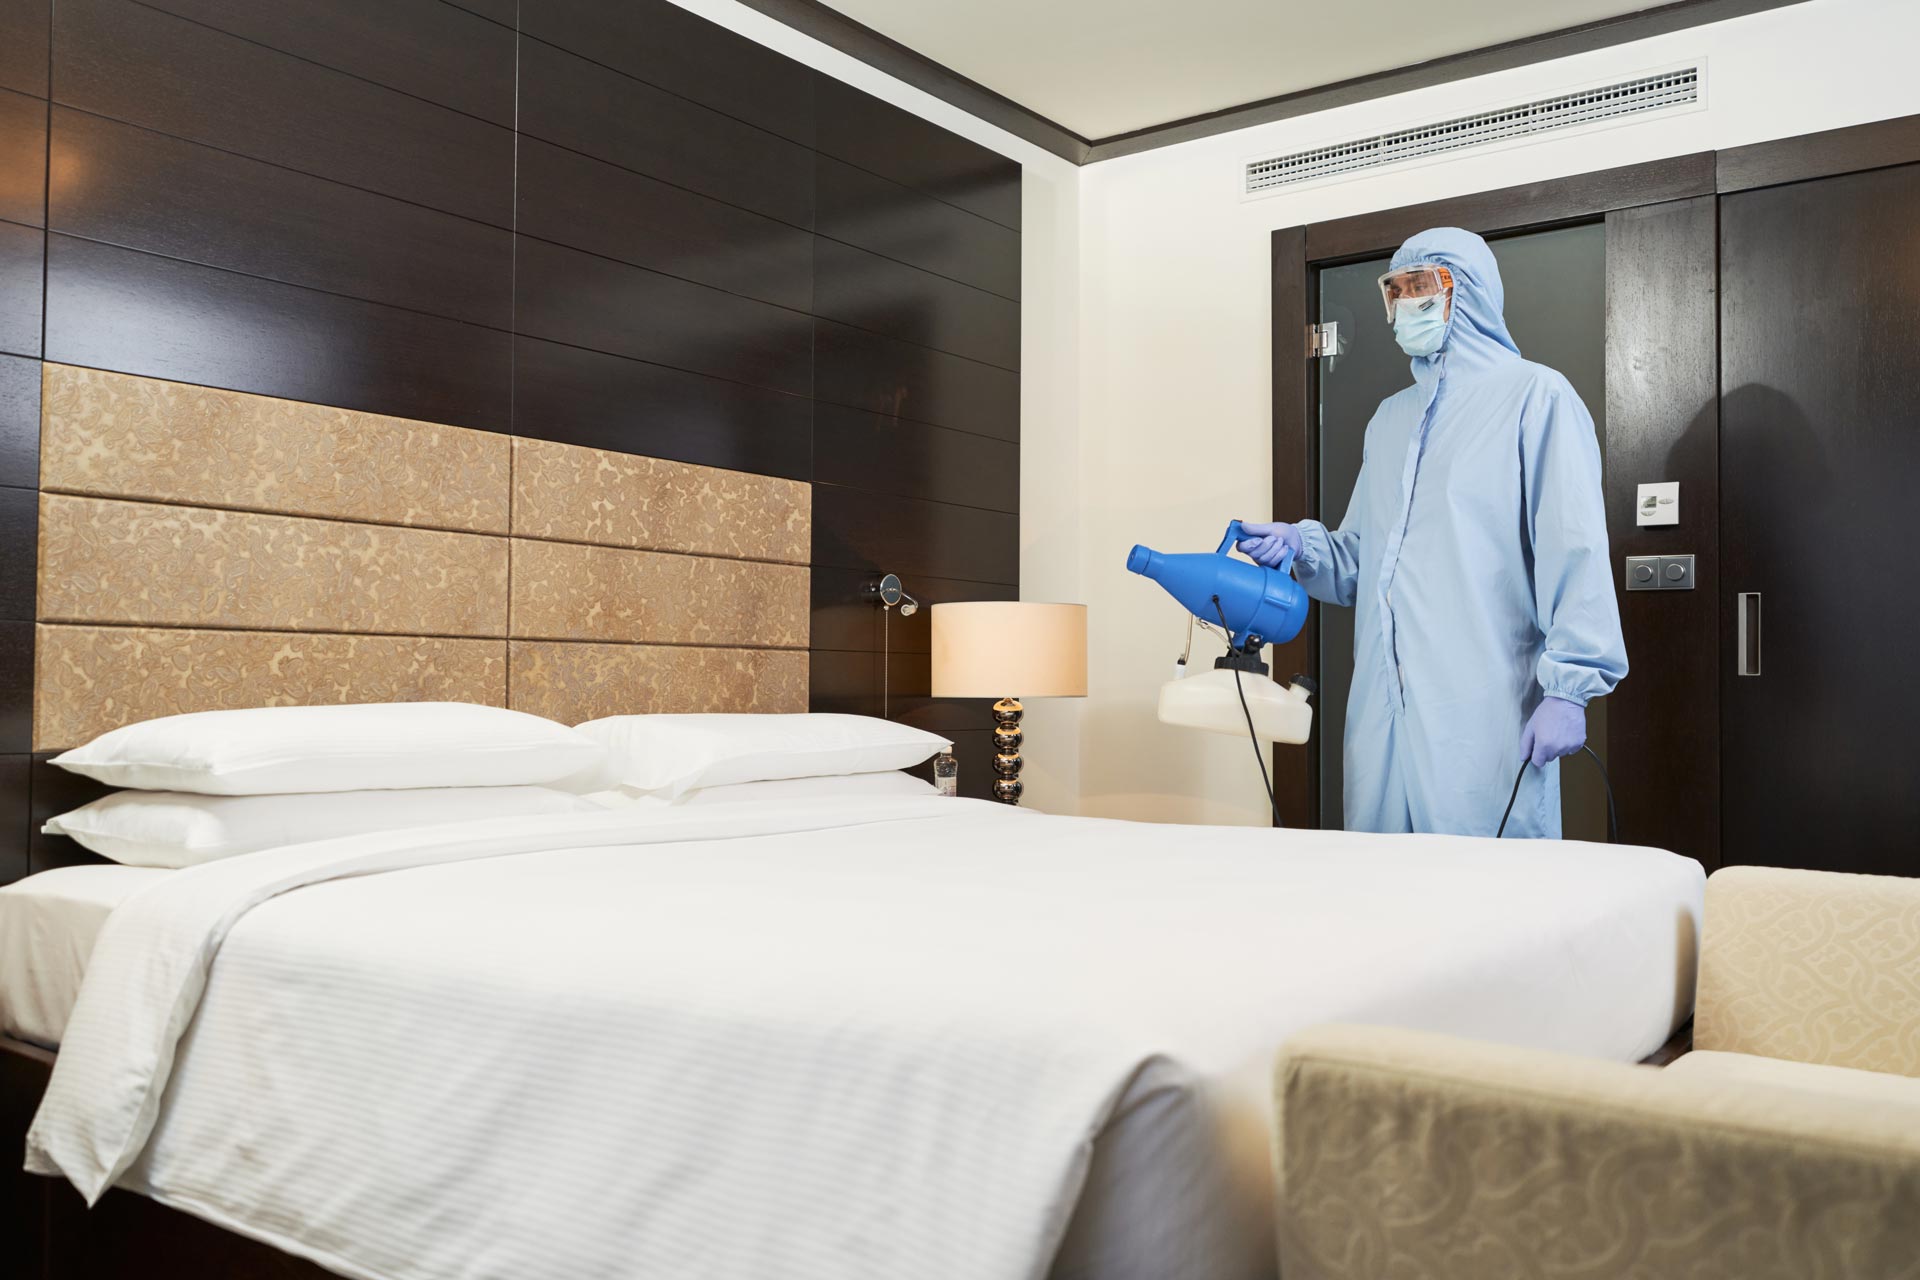 Désinsectiseur en train d'enfumer une chambre d'hôtel pour le traitement des punaises de lit